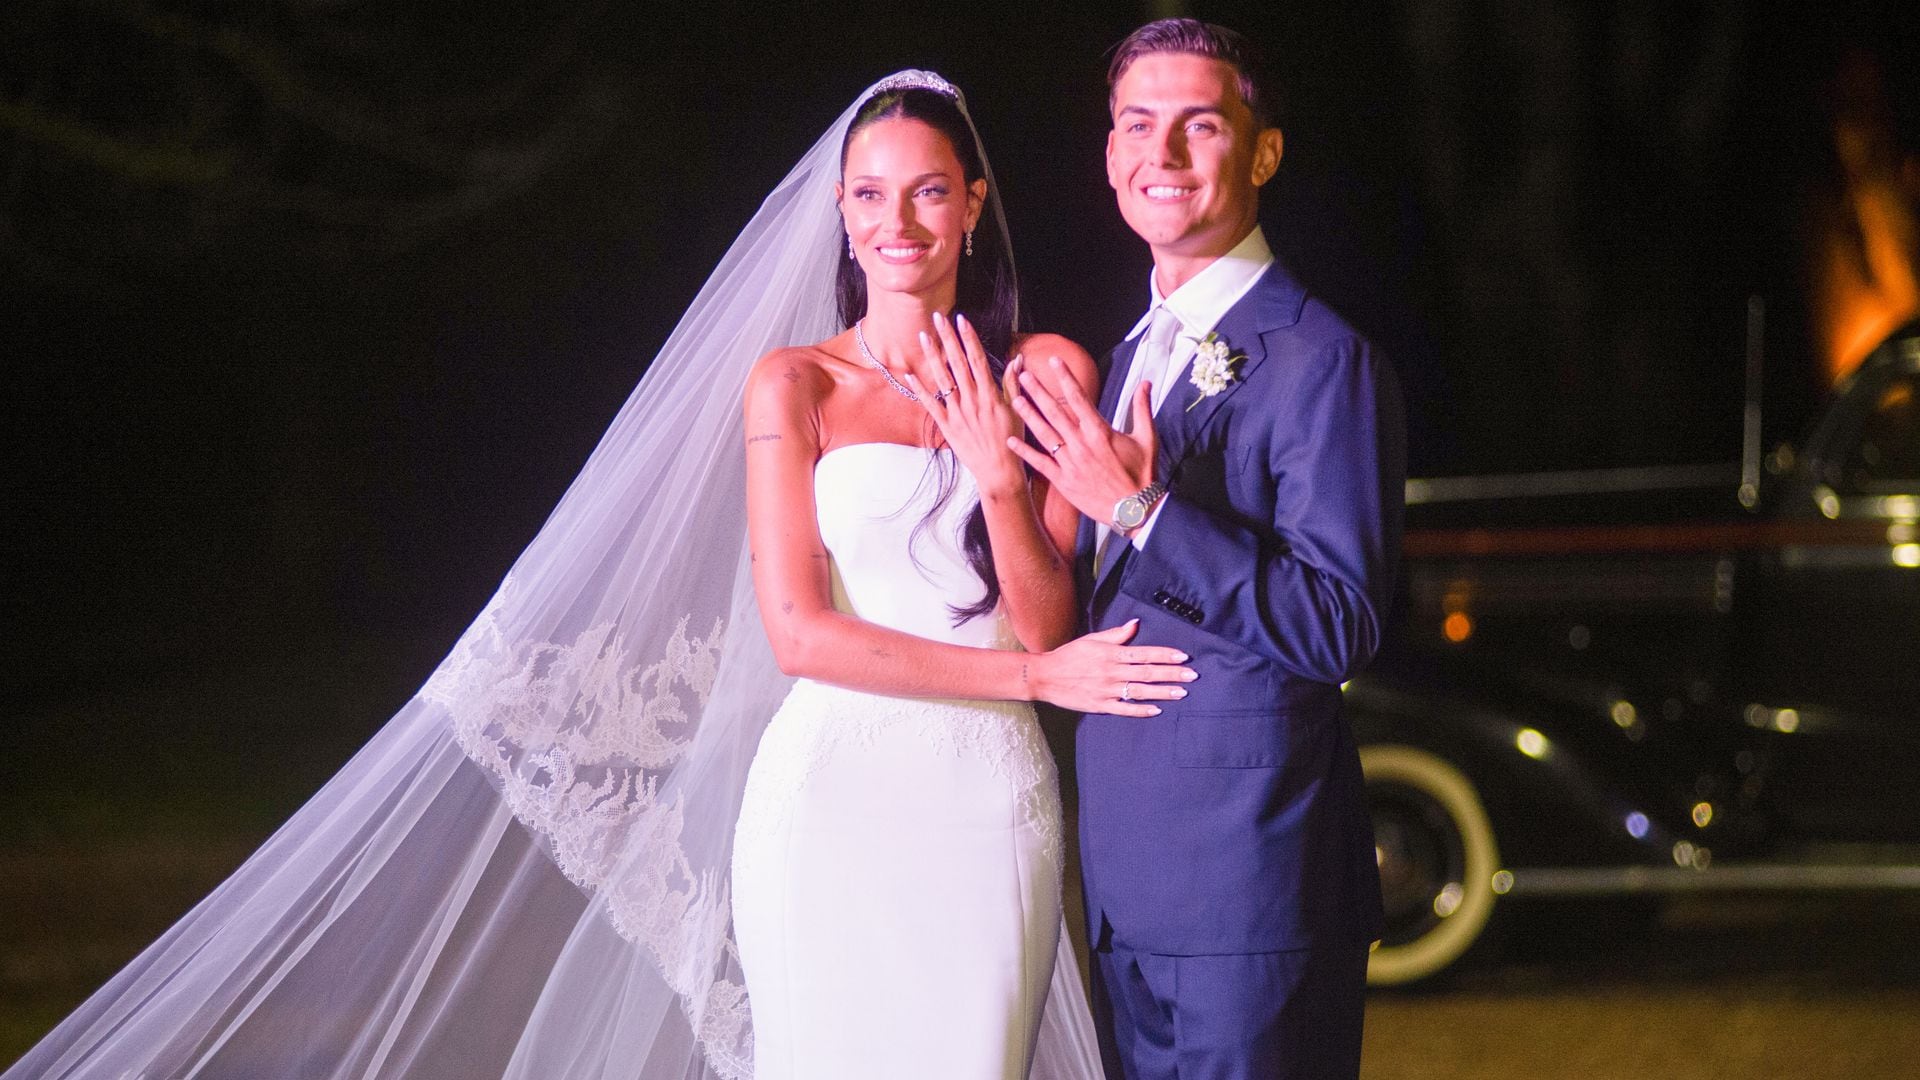 La estrella del fútbol argentino, que juega en el Club Roma italiano y su novia, la bella cantante argentina, se han casado después de seis años de noviazgo